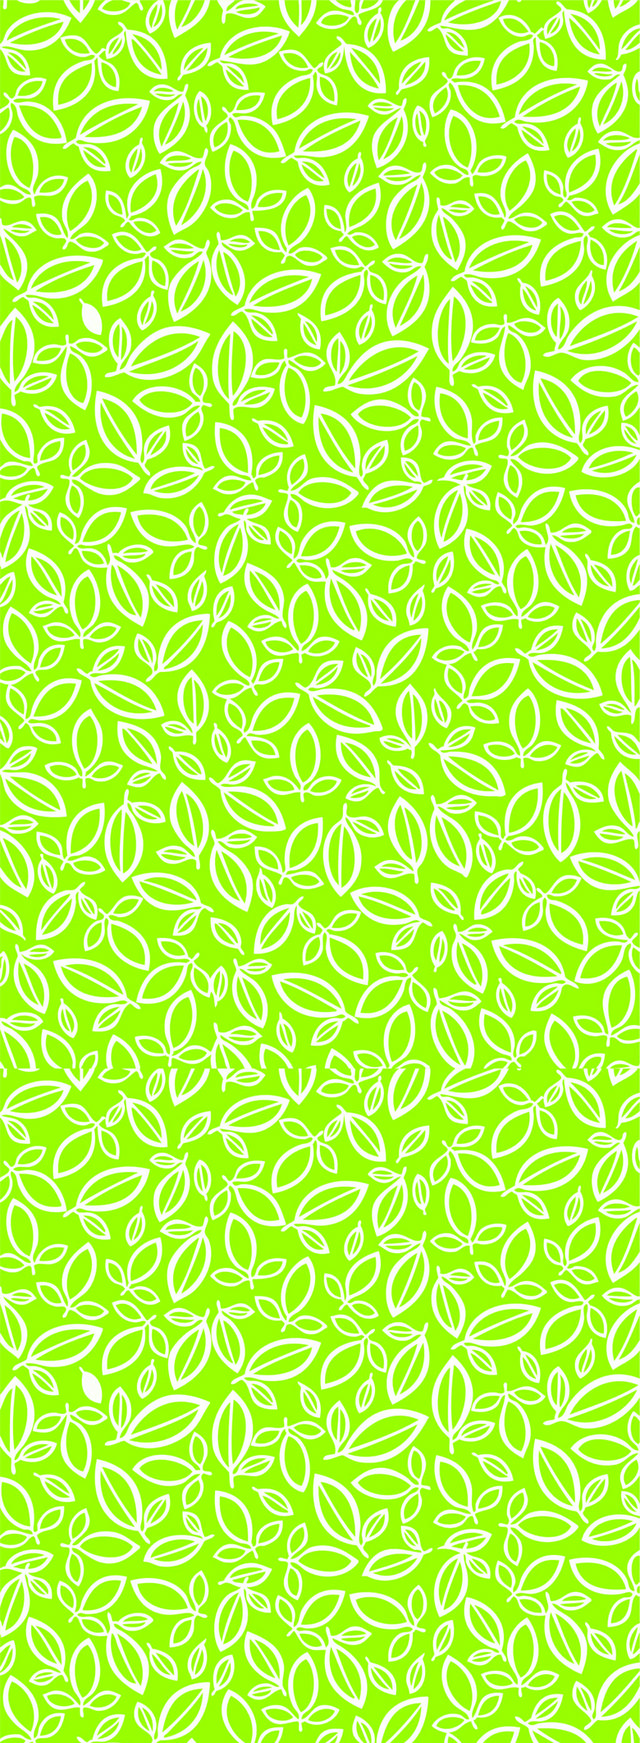 绿色抽象叶子花纹背景